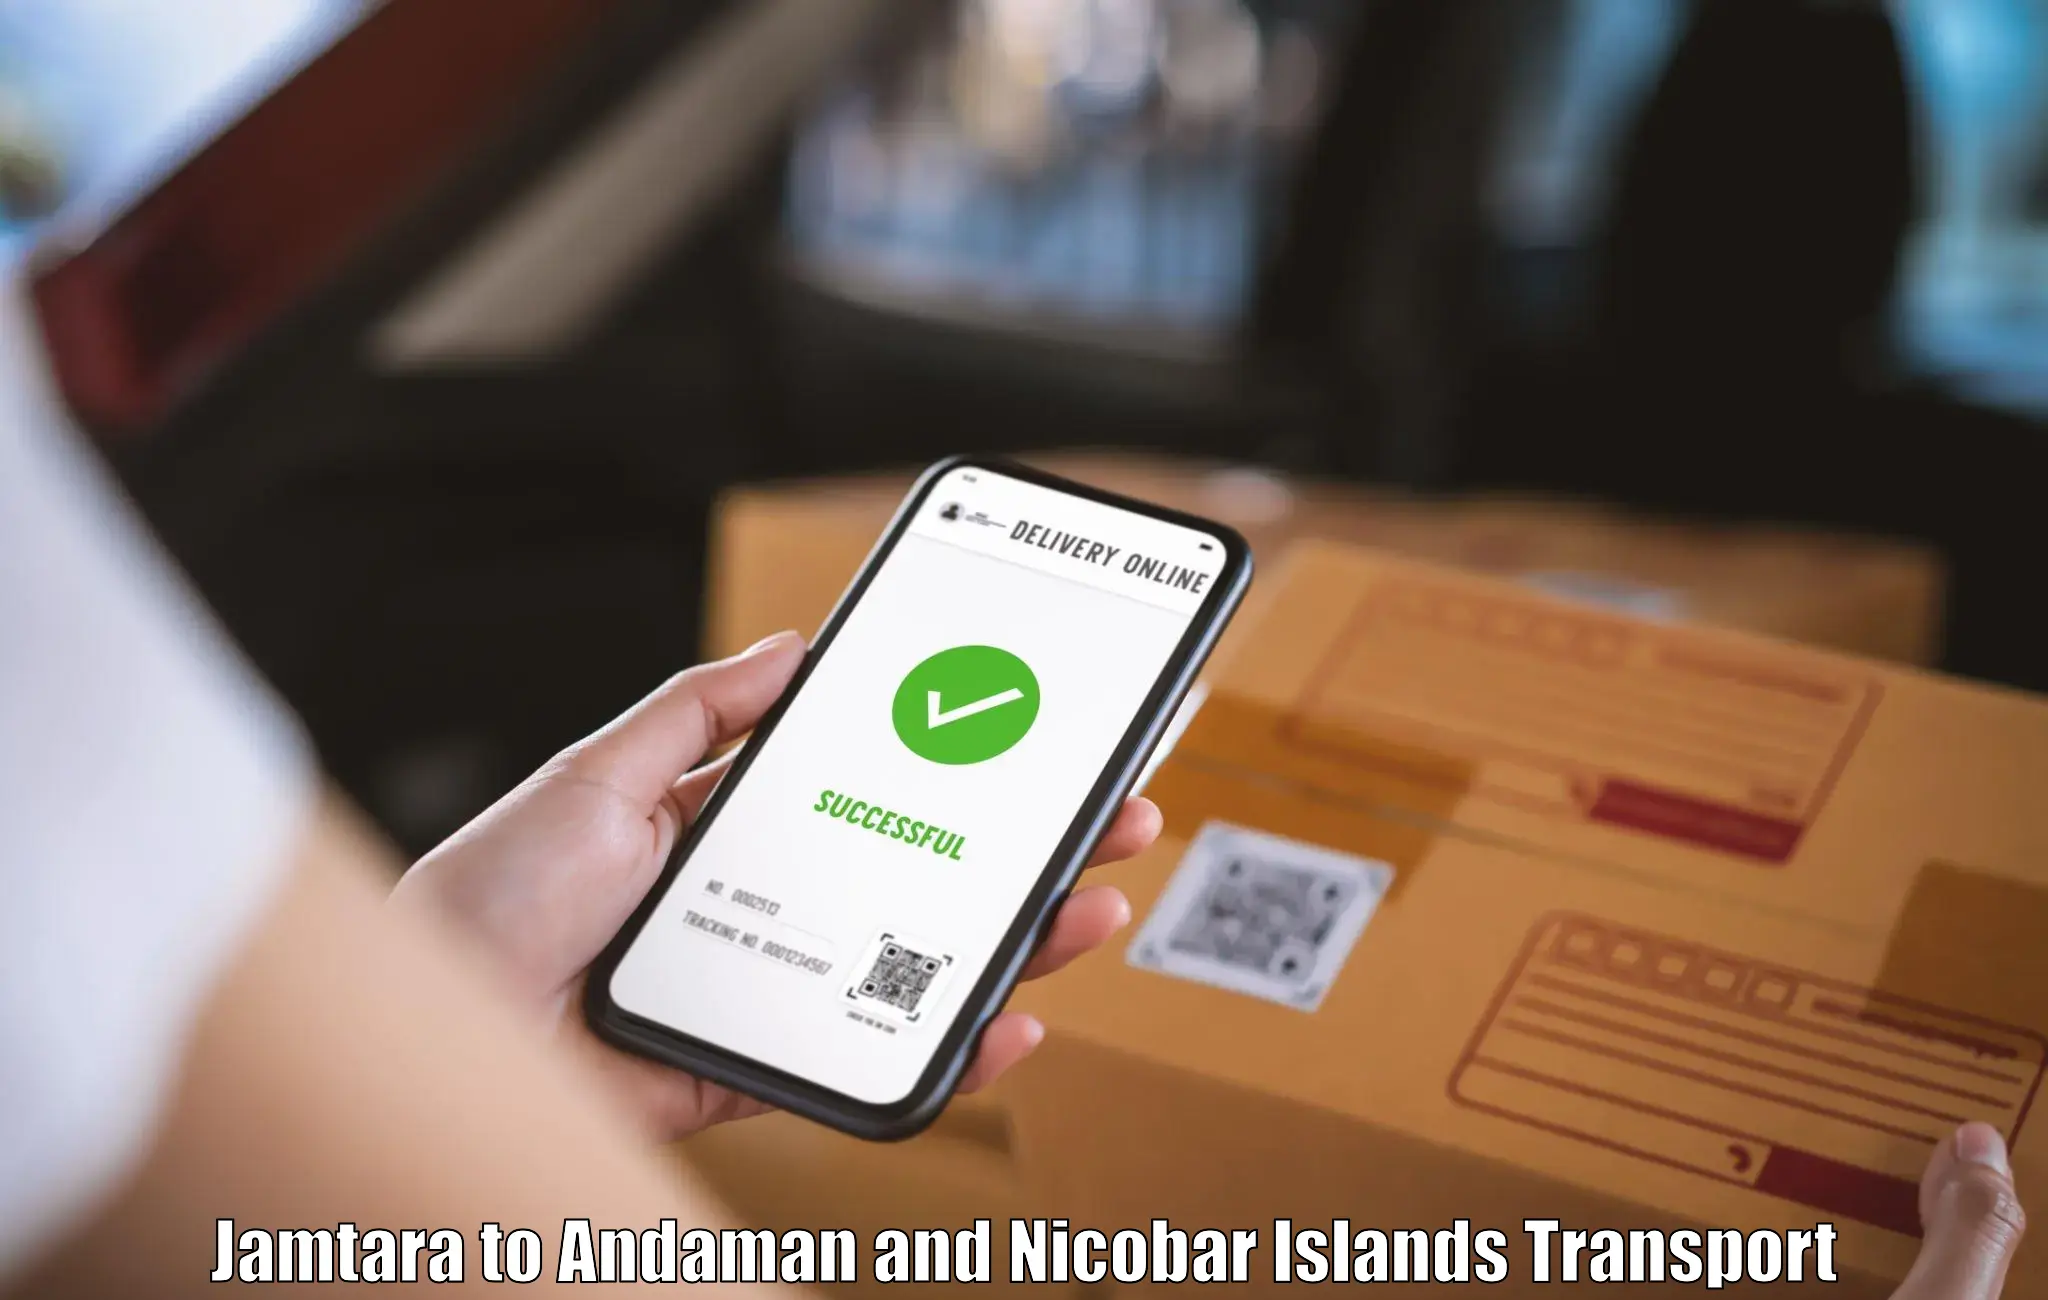 Daily transport service Jamtara to Andaman and Nicobar Islands